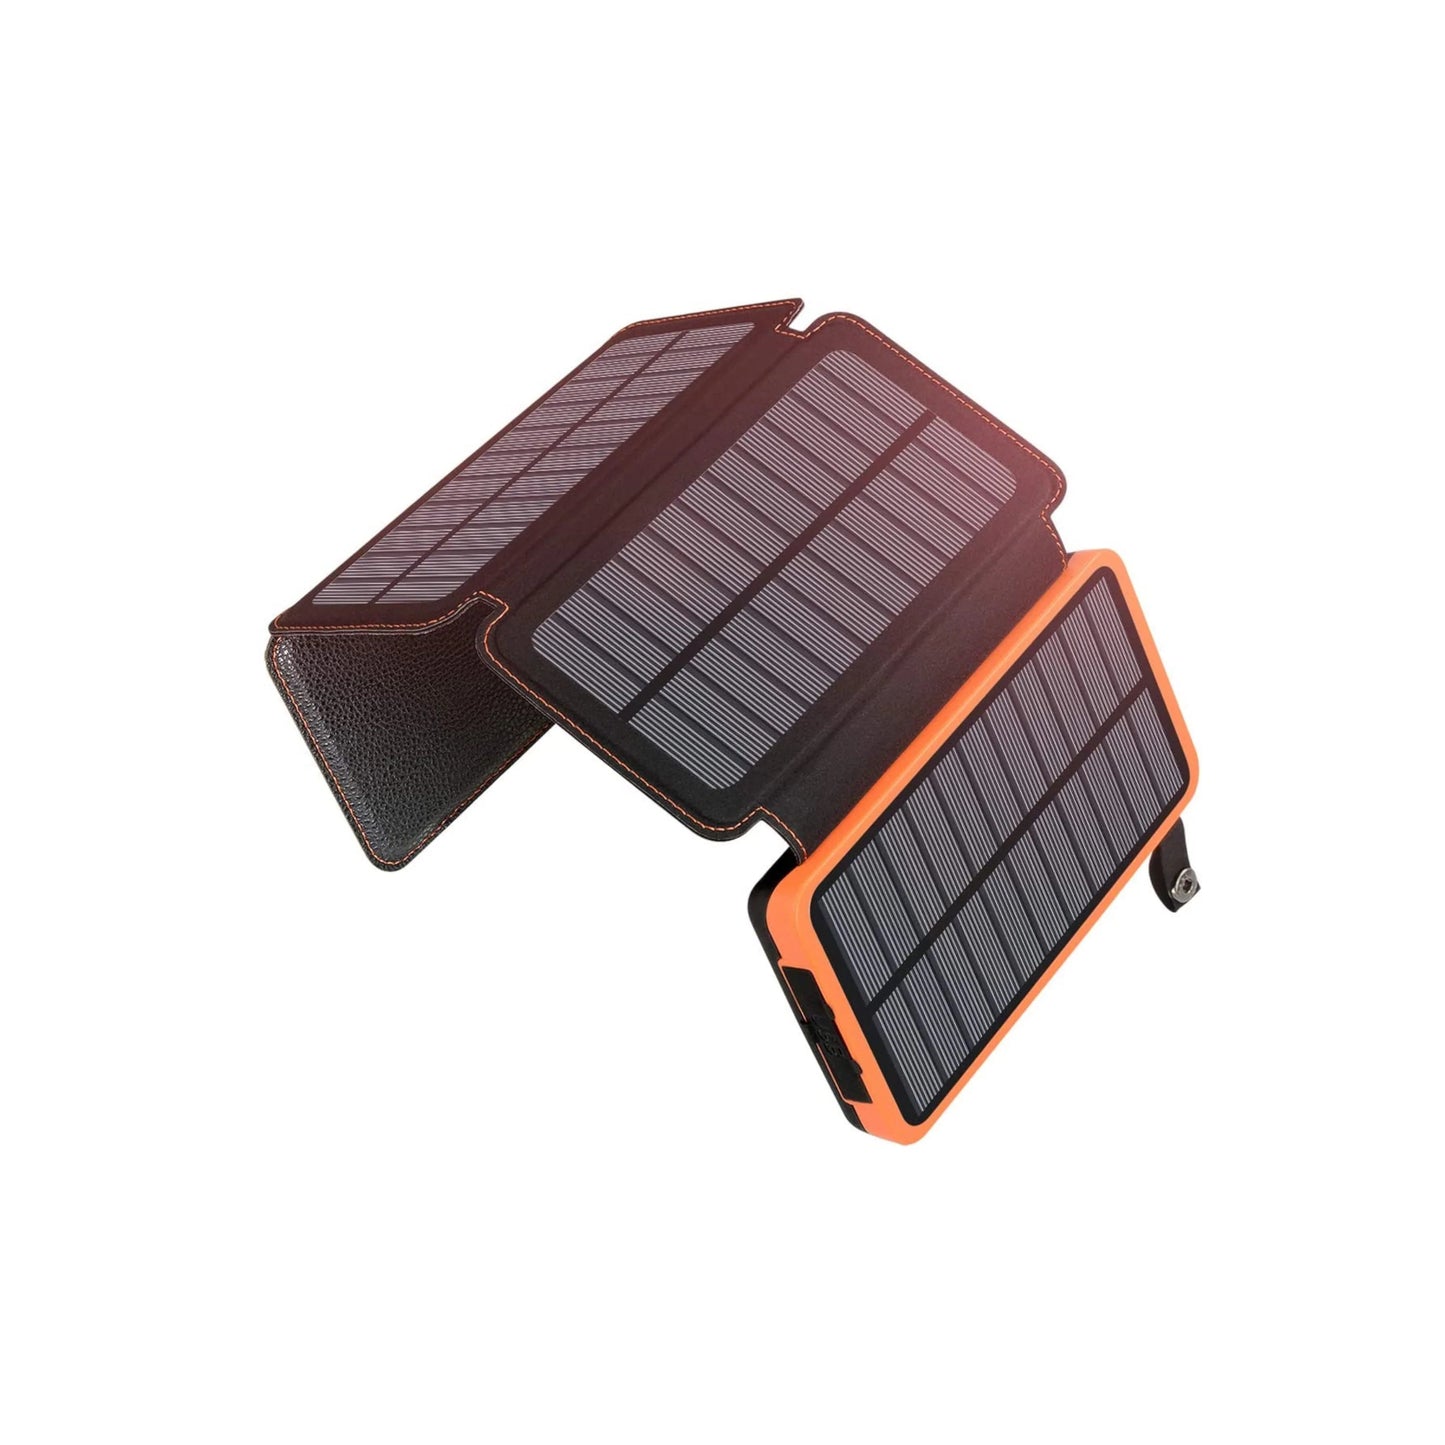 Stroomuitvalpakket Extreme Blackout-kit - met megakrachtcentrale, zonnepaneel, gasfornuis, kookset, bestek, zonne-energiebank, waterfilter, kaarsen en nog veel meer